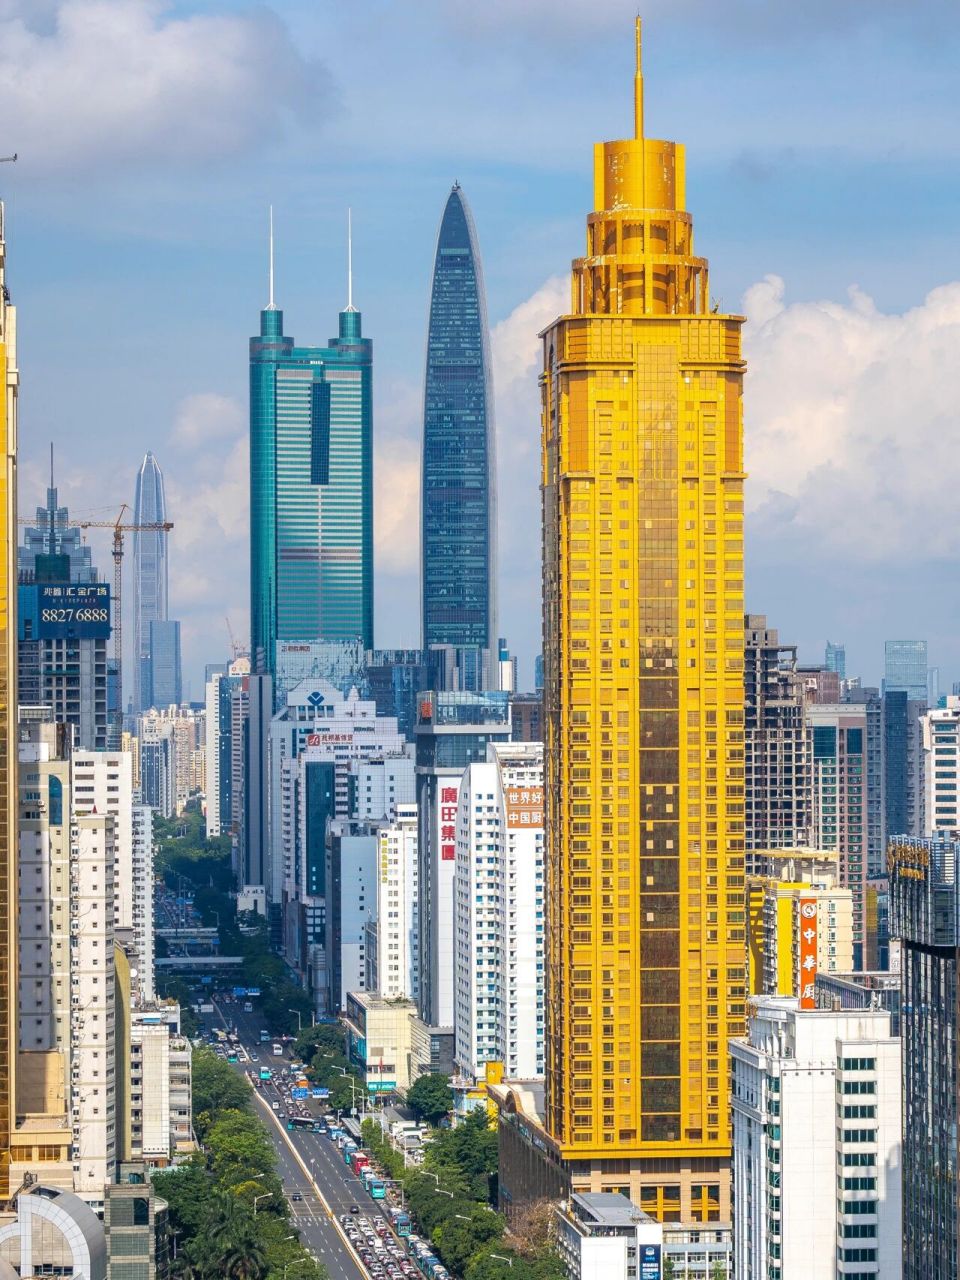 5米的平安金融大厦是深圳市的第一高楼